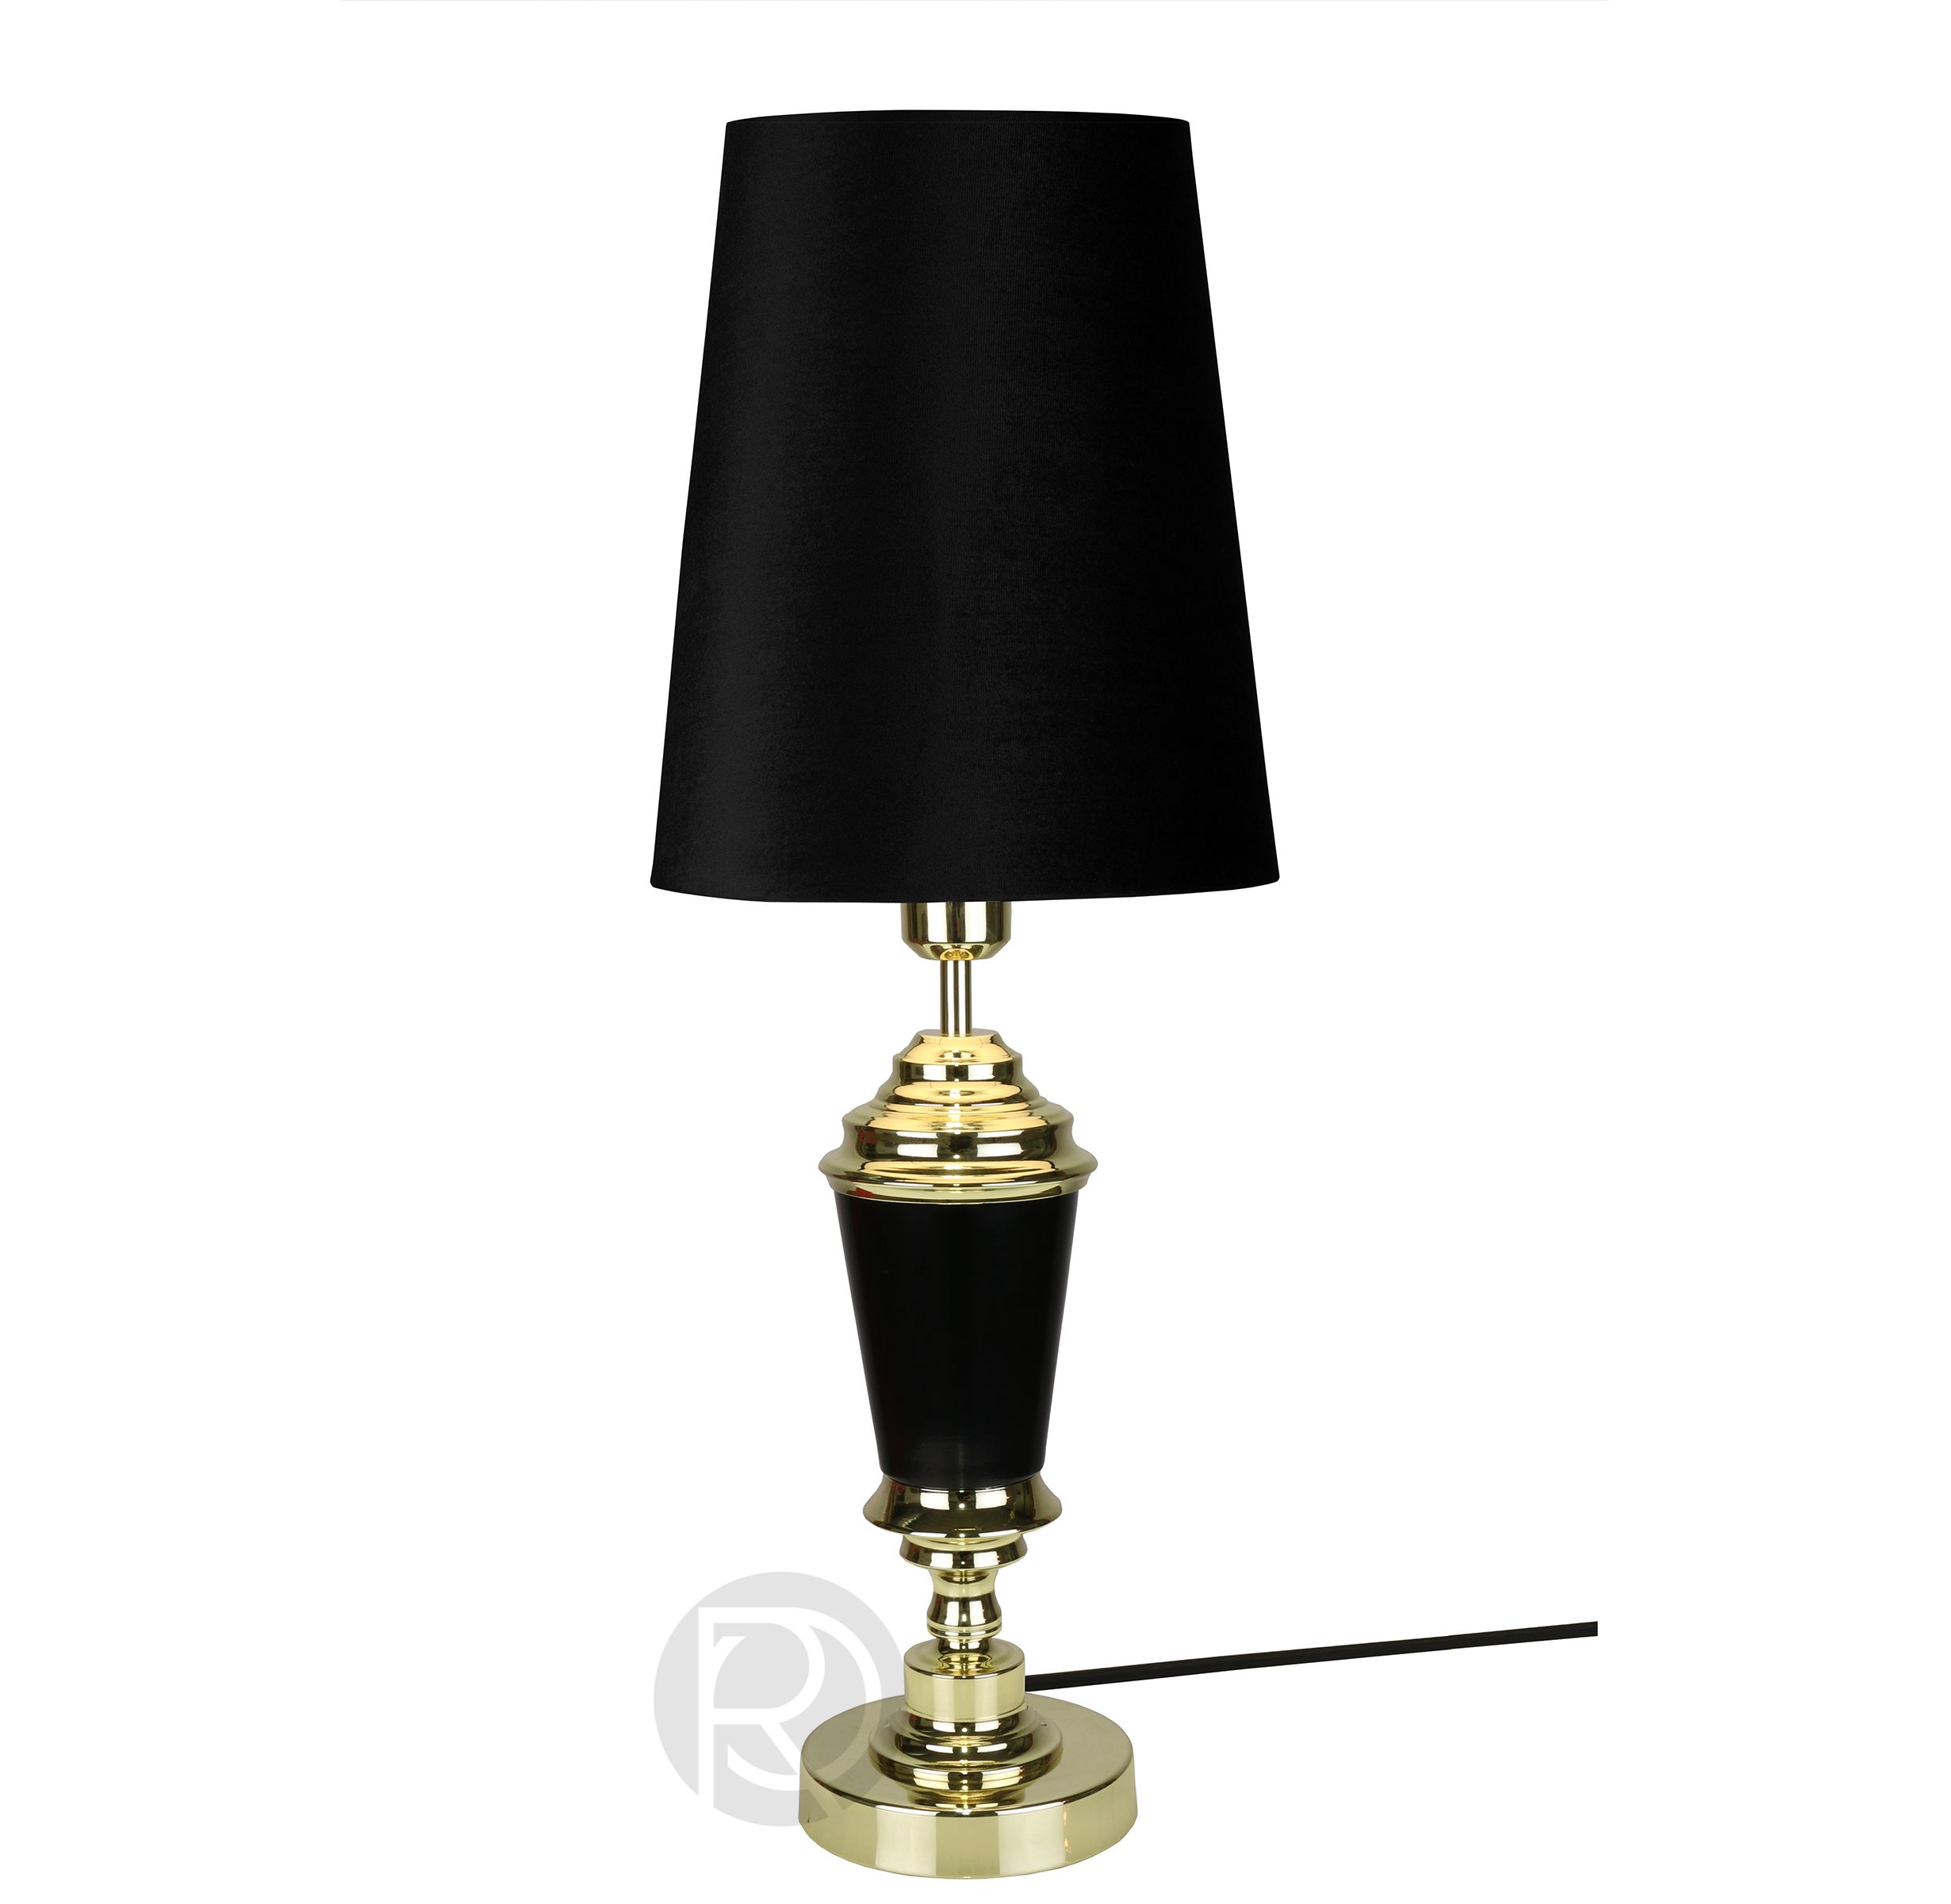 WALLENBERG table lamp by Globen